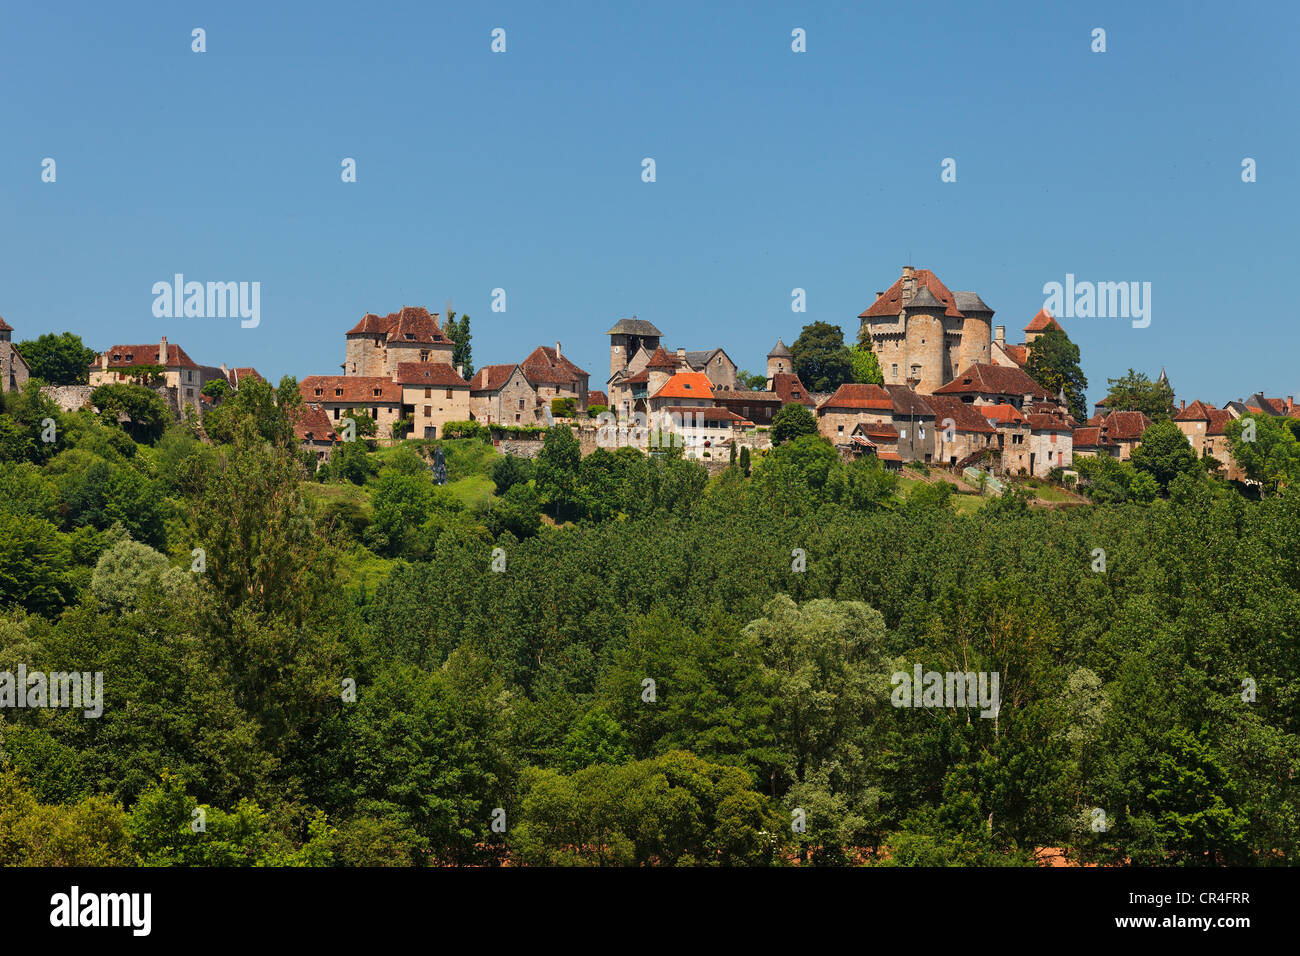 Curemonte, Les plus Beaux gekennzeichnet Dörfer de France, der schönsten Dörfer von Frankreich, Dordogne-Tal, Frankreich, Europa Stockfoto